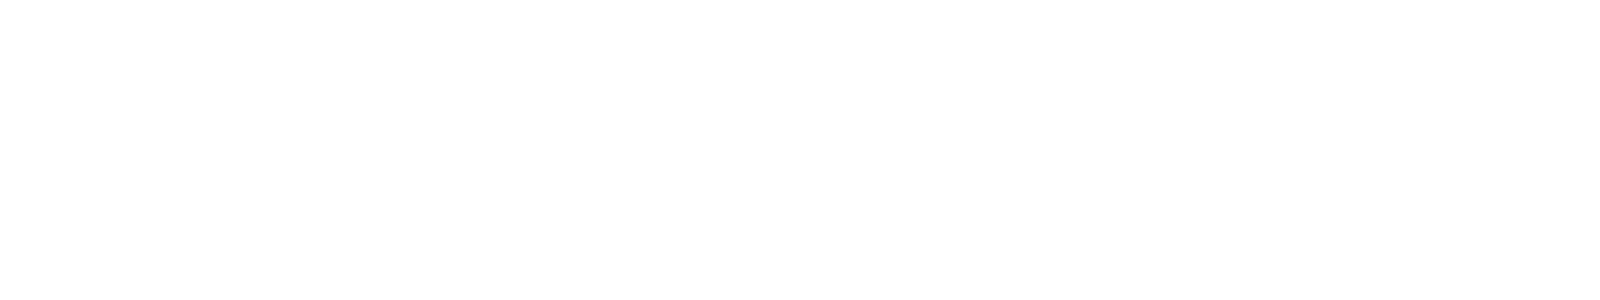 s7law logo biale2 - Pakiet Platynowy